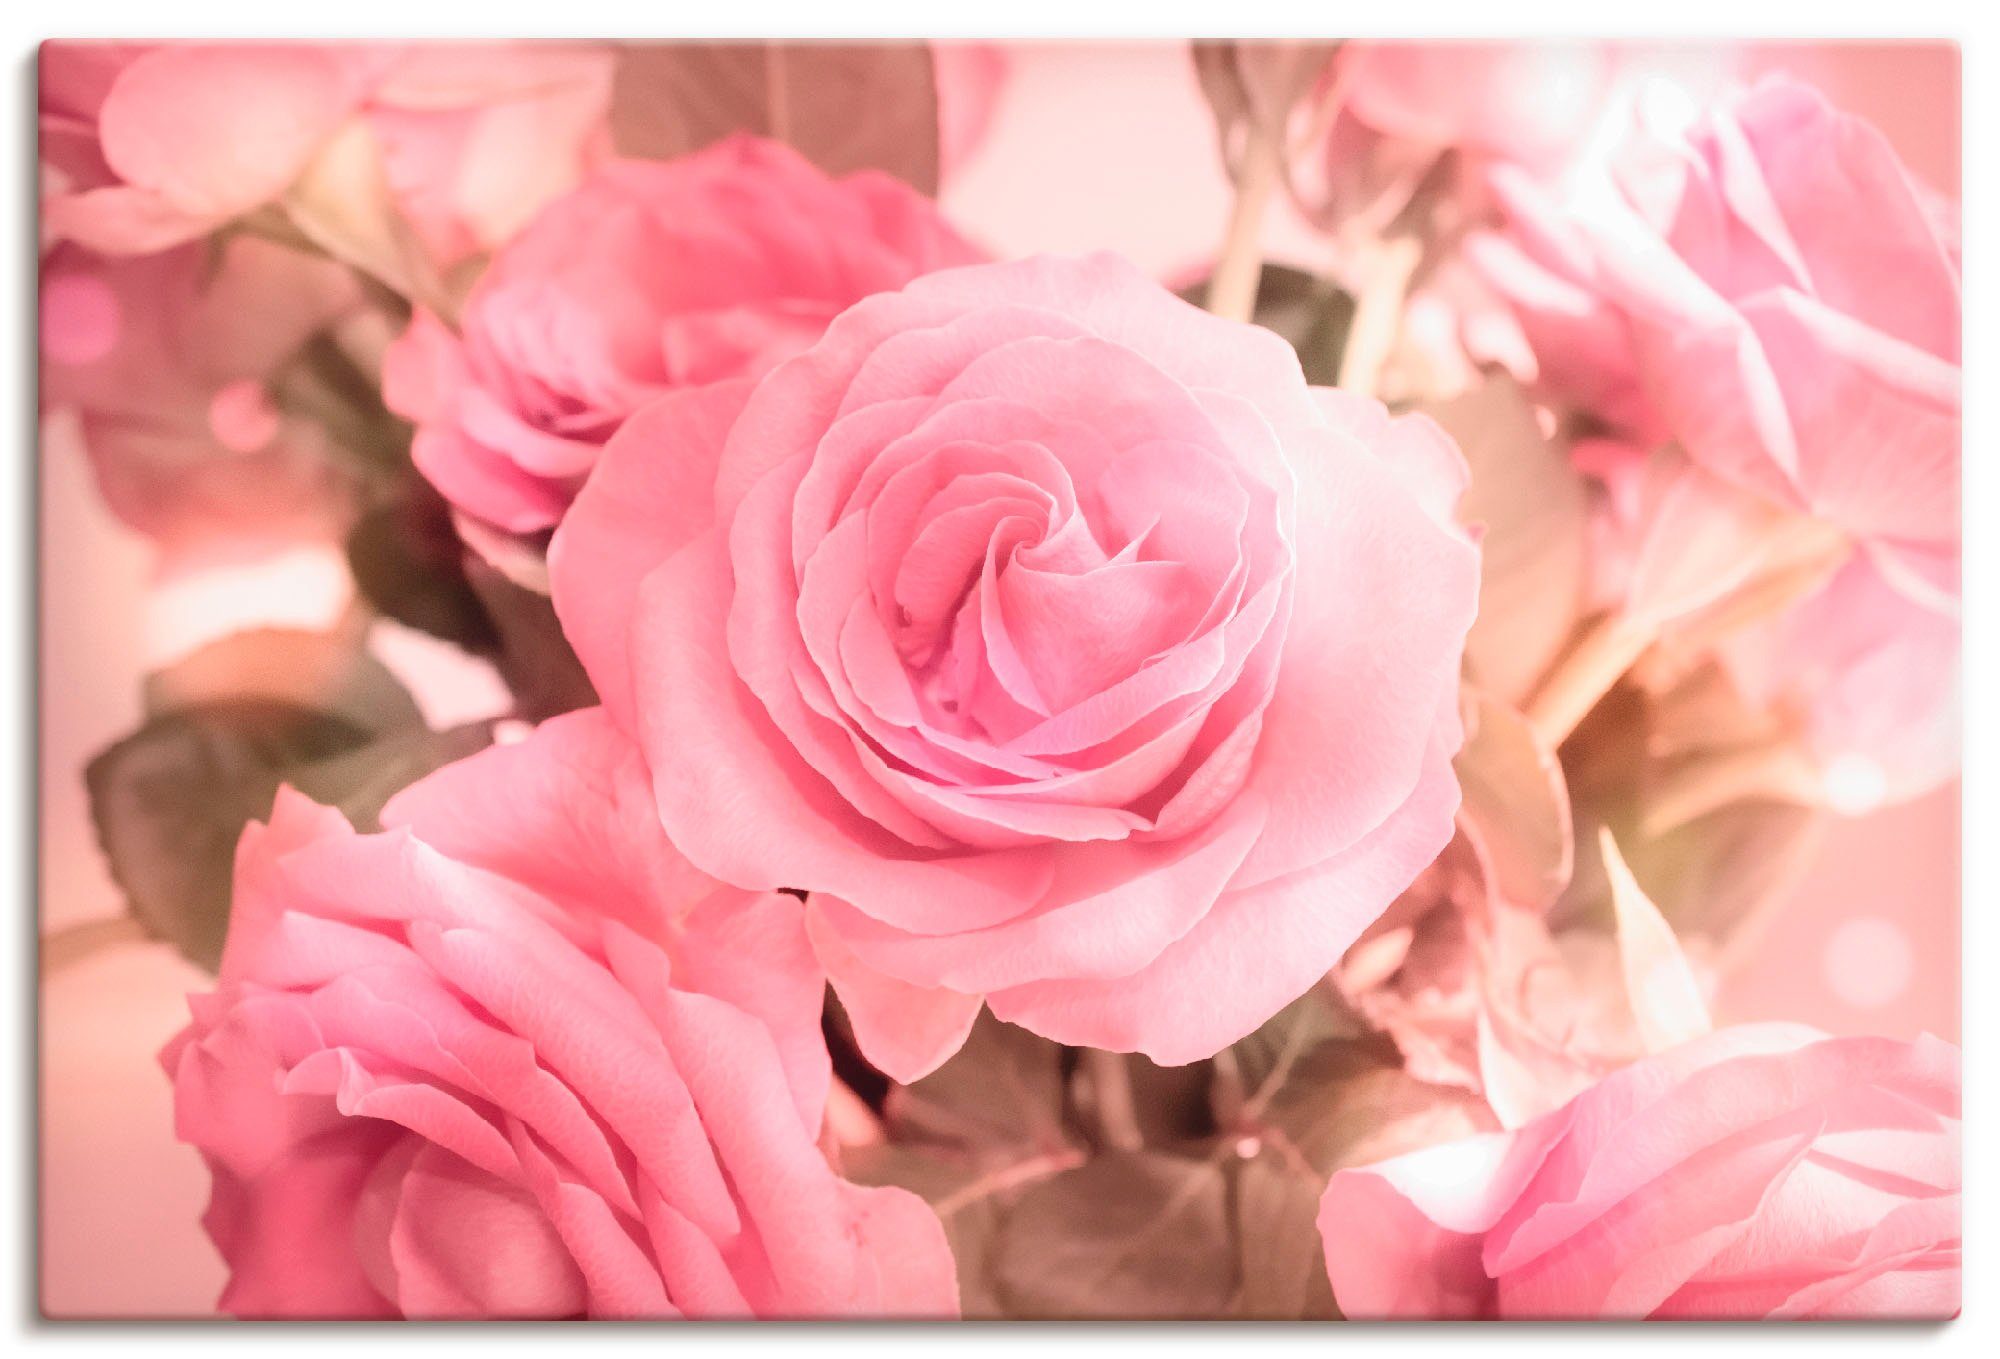 Artland Artprint Boeket roze rozen in vele afmetingen & productsoorten - artprint van aluminium / artprint voor buiten, artprint op linnen, poster, muursticker / wandfolie ook gesc